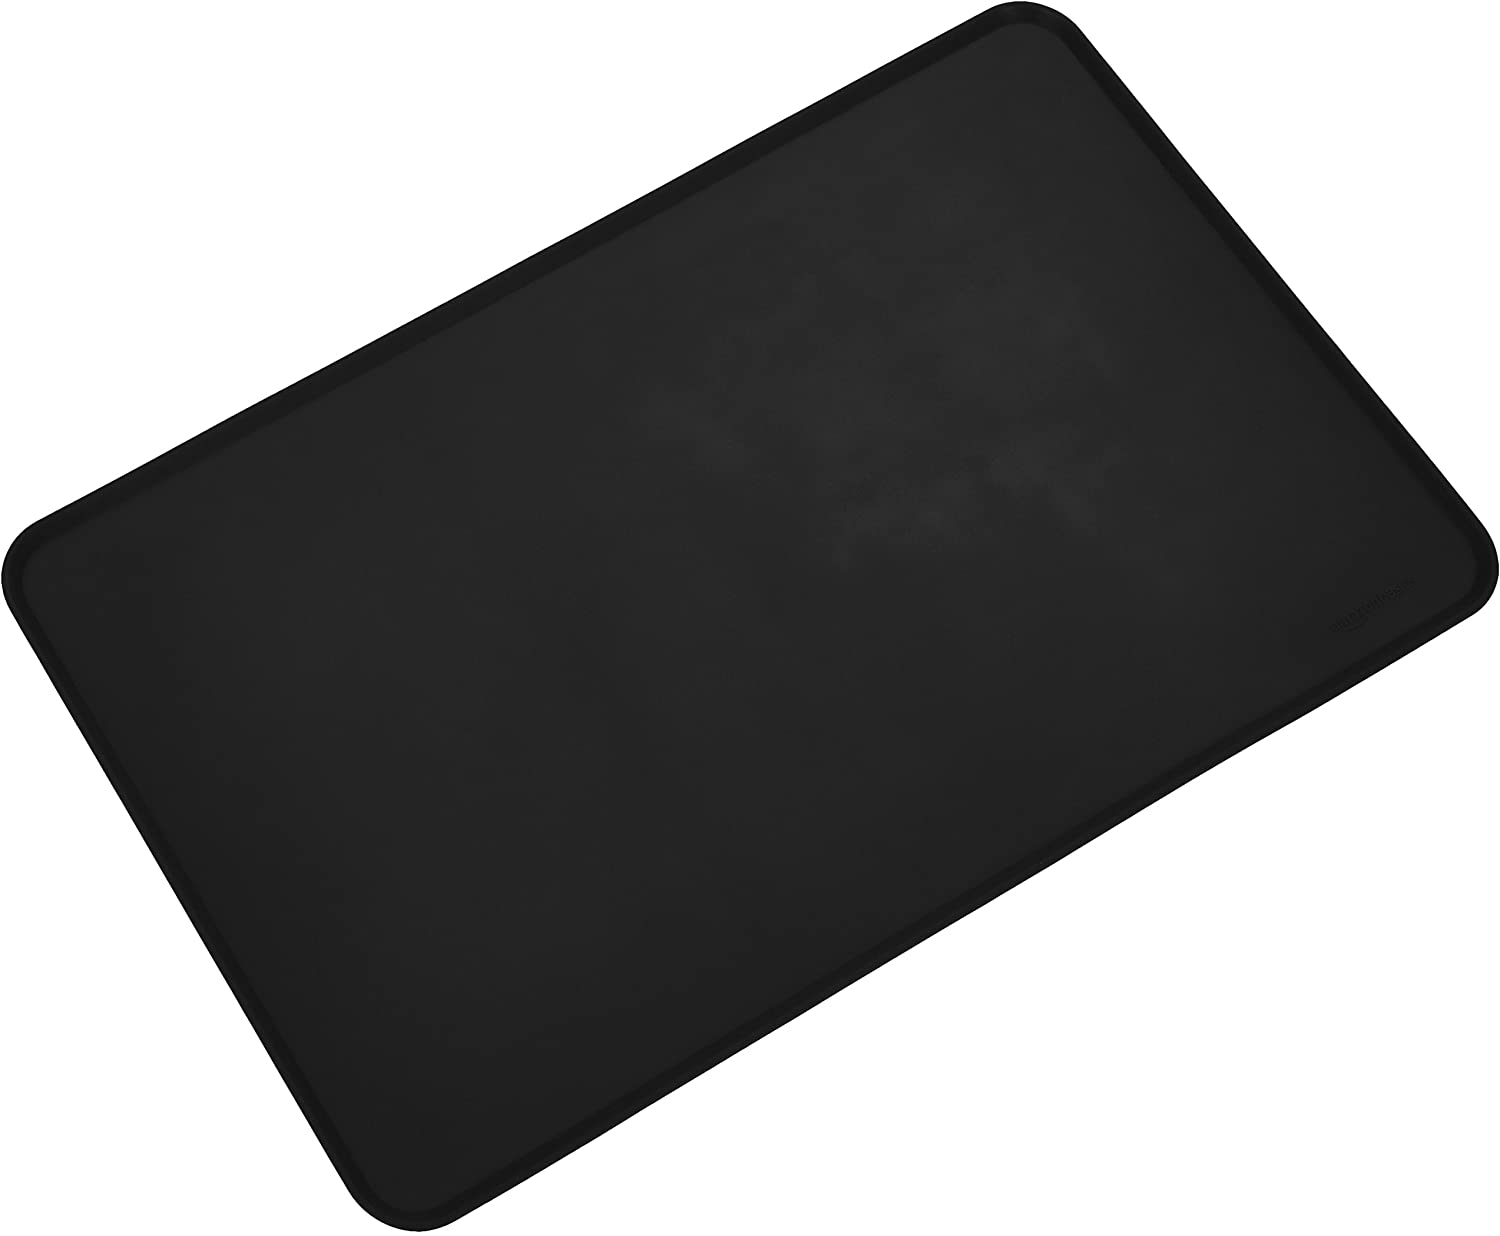  AmazonBasics - Alfombrilla para comedero de mascota, de silicona, impermeable, 61 x 41 cm, Negro 